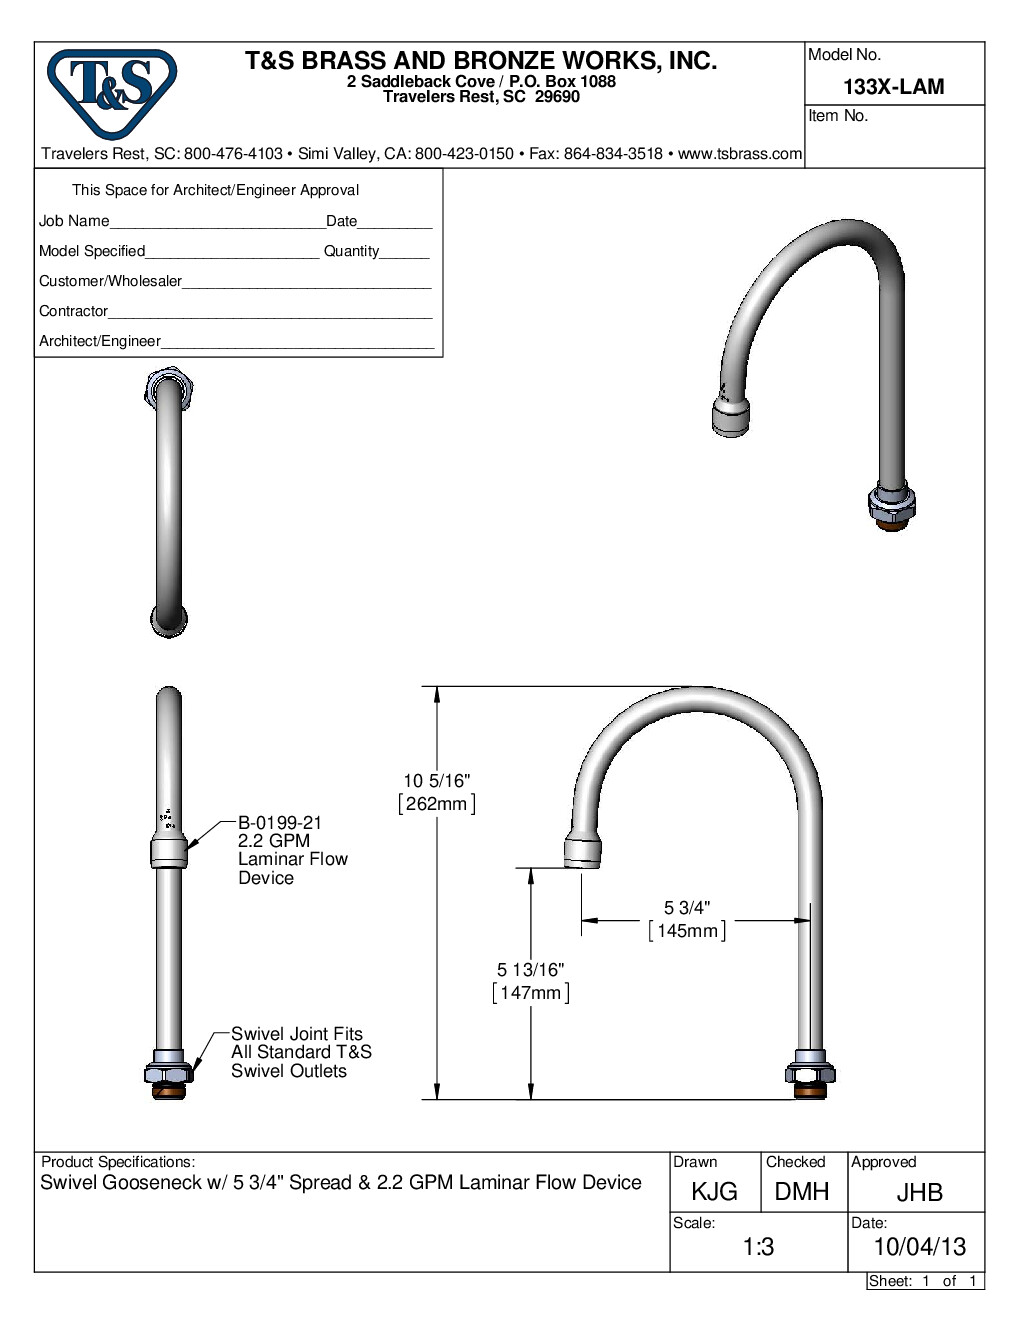 T&S Brass 133X-LAM Spout / Nozzle Faucet